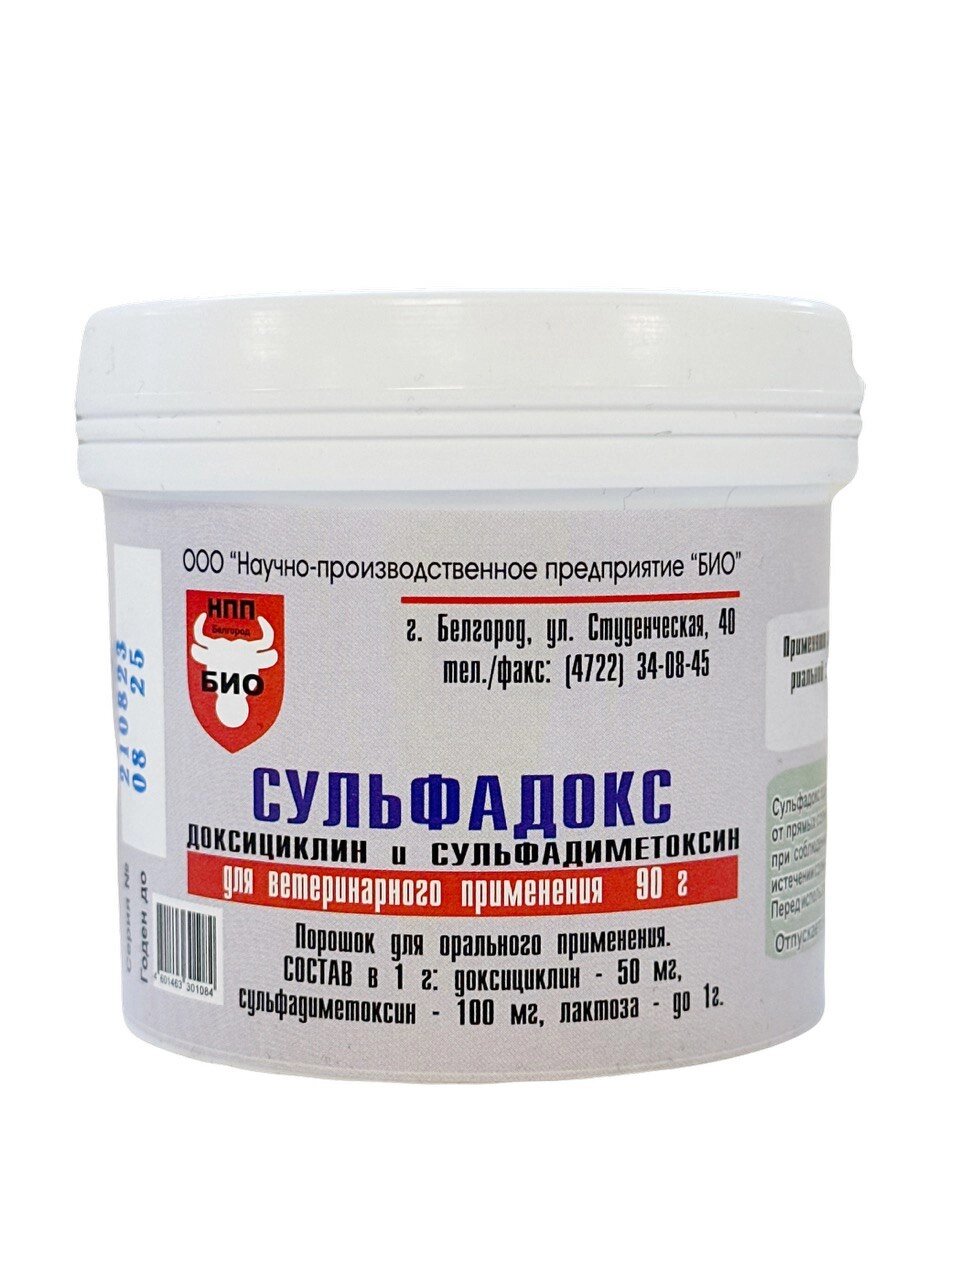 Сульфадокс 90 гр (Доксициклин+Сульфадиметоксин) от компании ООО "ВЕТАГРОСНАБ" - фото 1